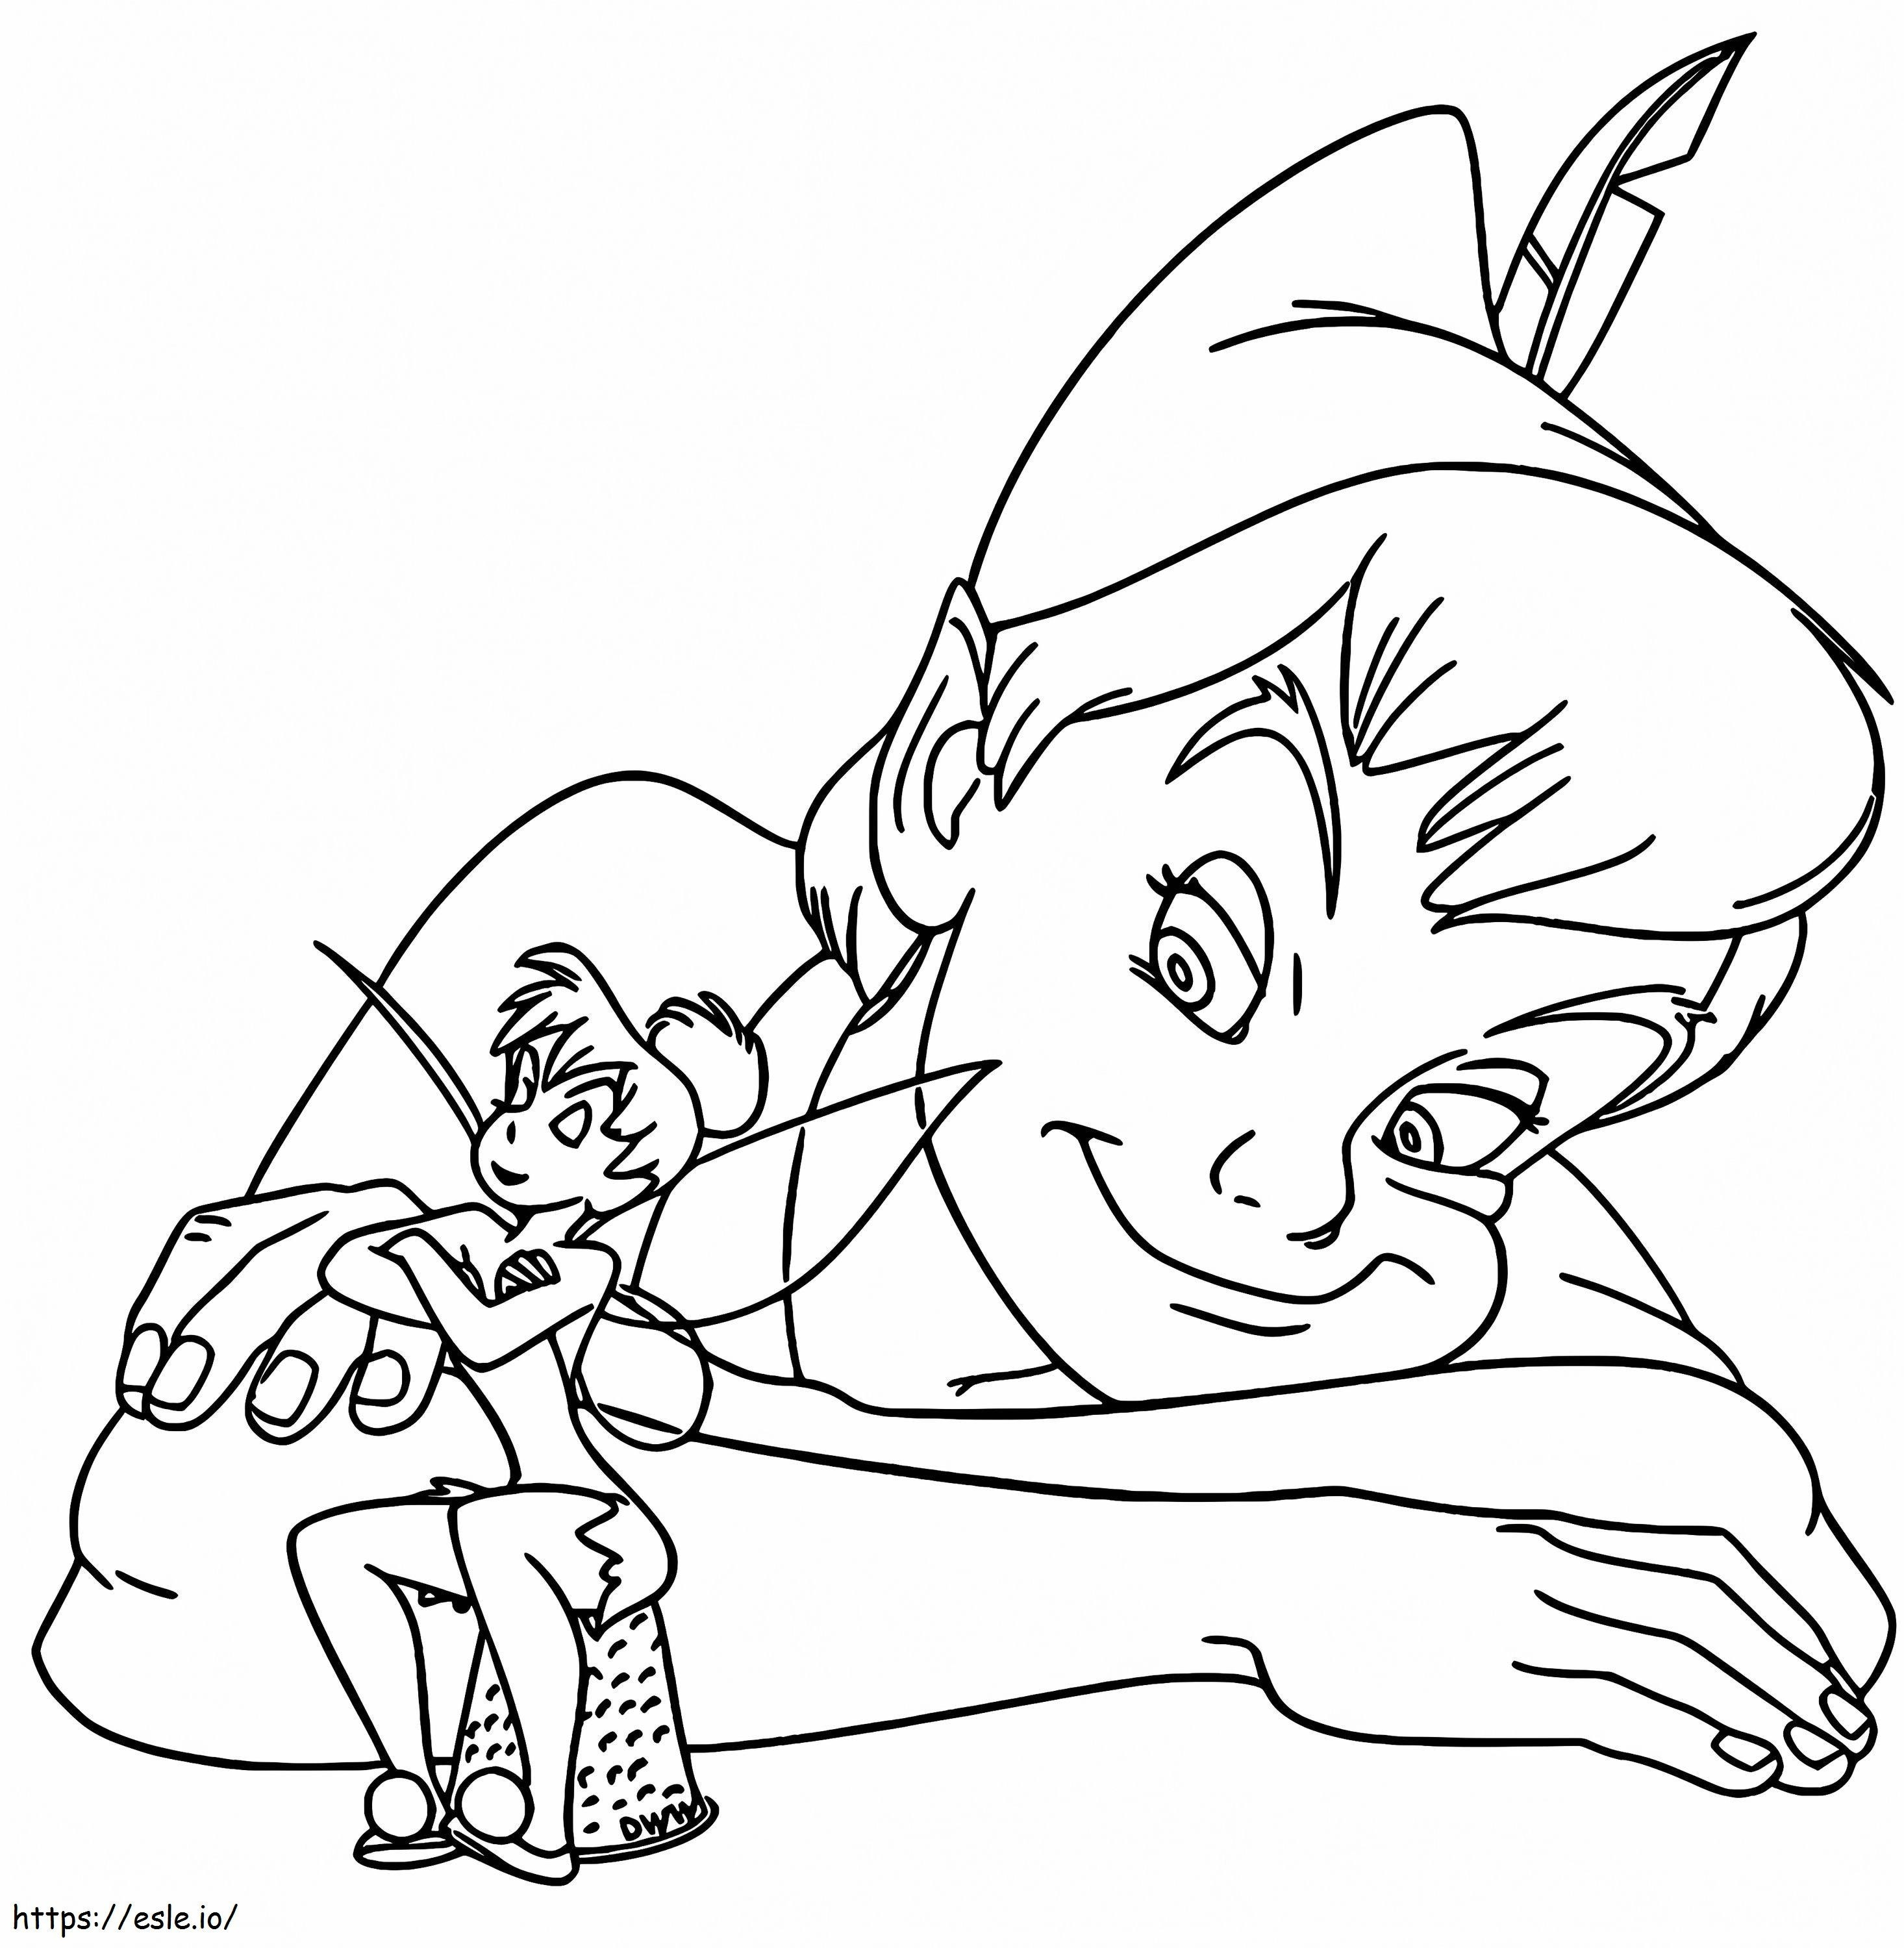 1545725905 Poza cu Tinkerbell de colorat Poza valabilă Tinkerbell de colorat Valid Peter Pan și cu poza cu Tinkerbell de colorat de colorat